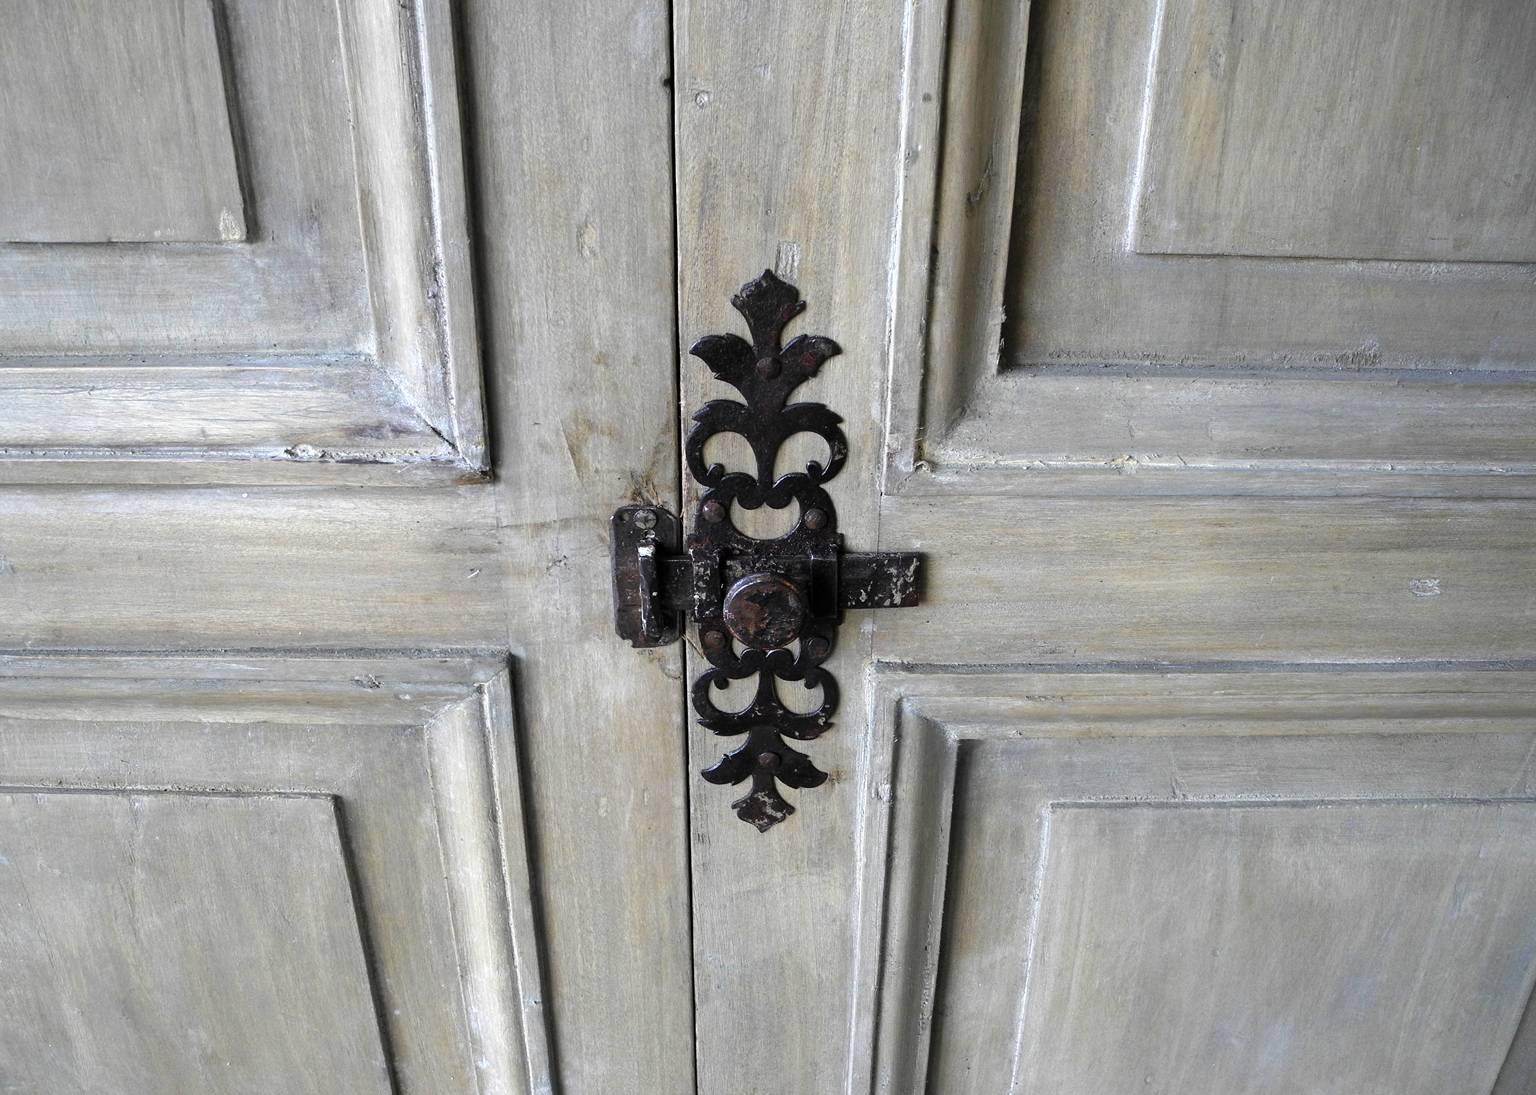 antique wood doors